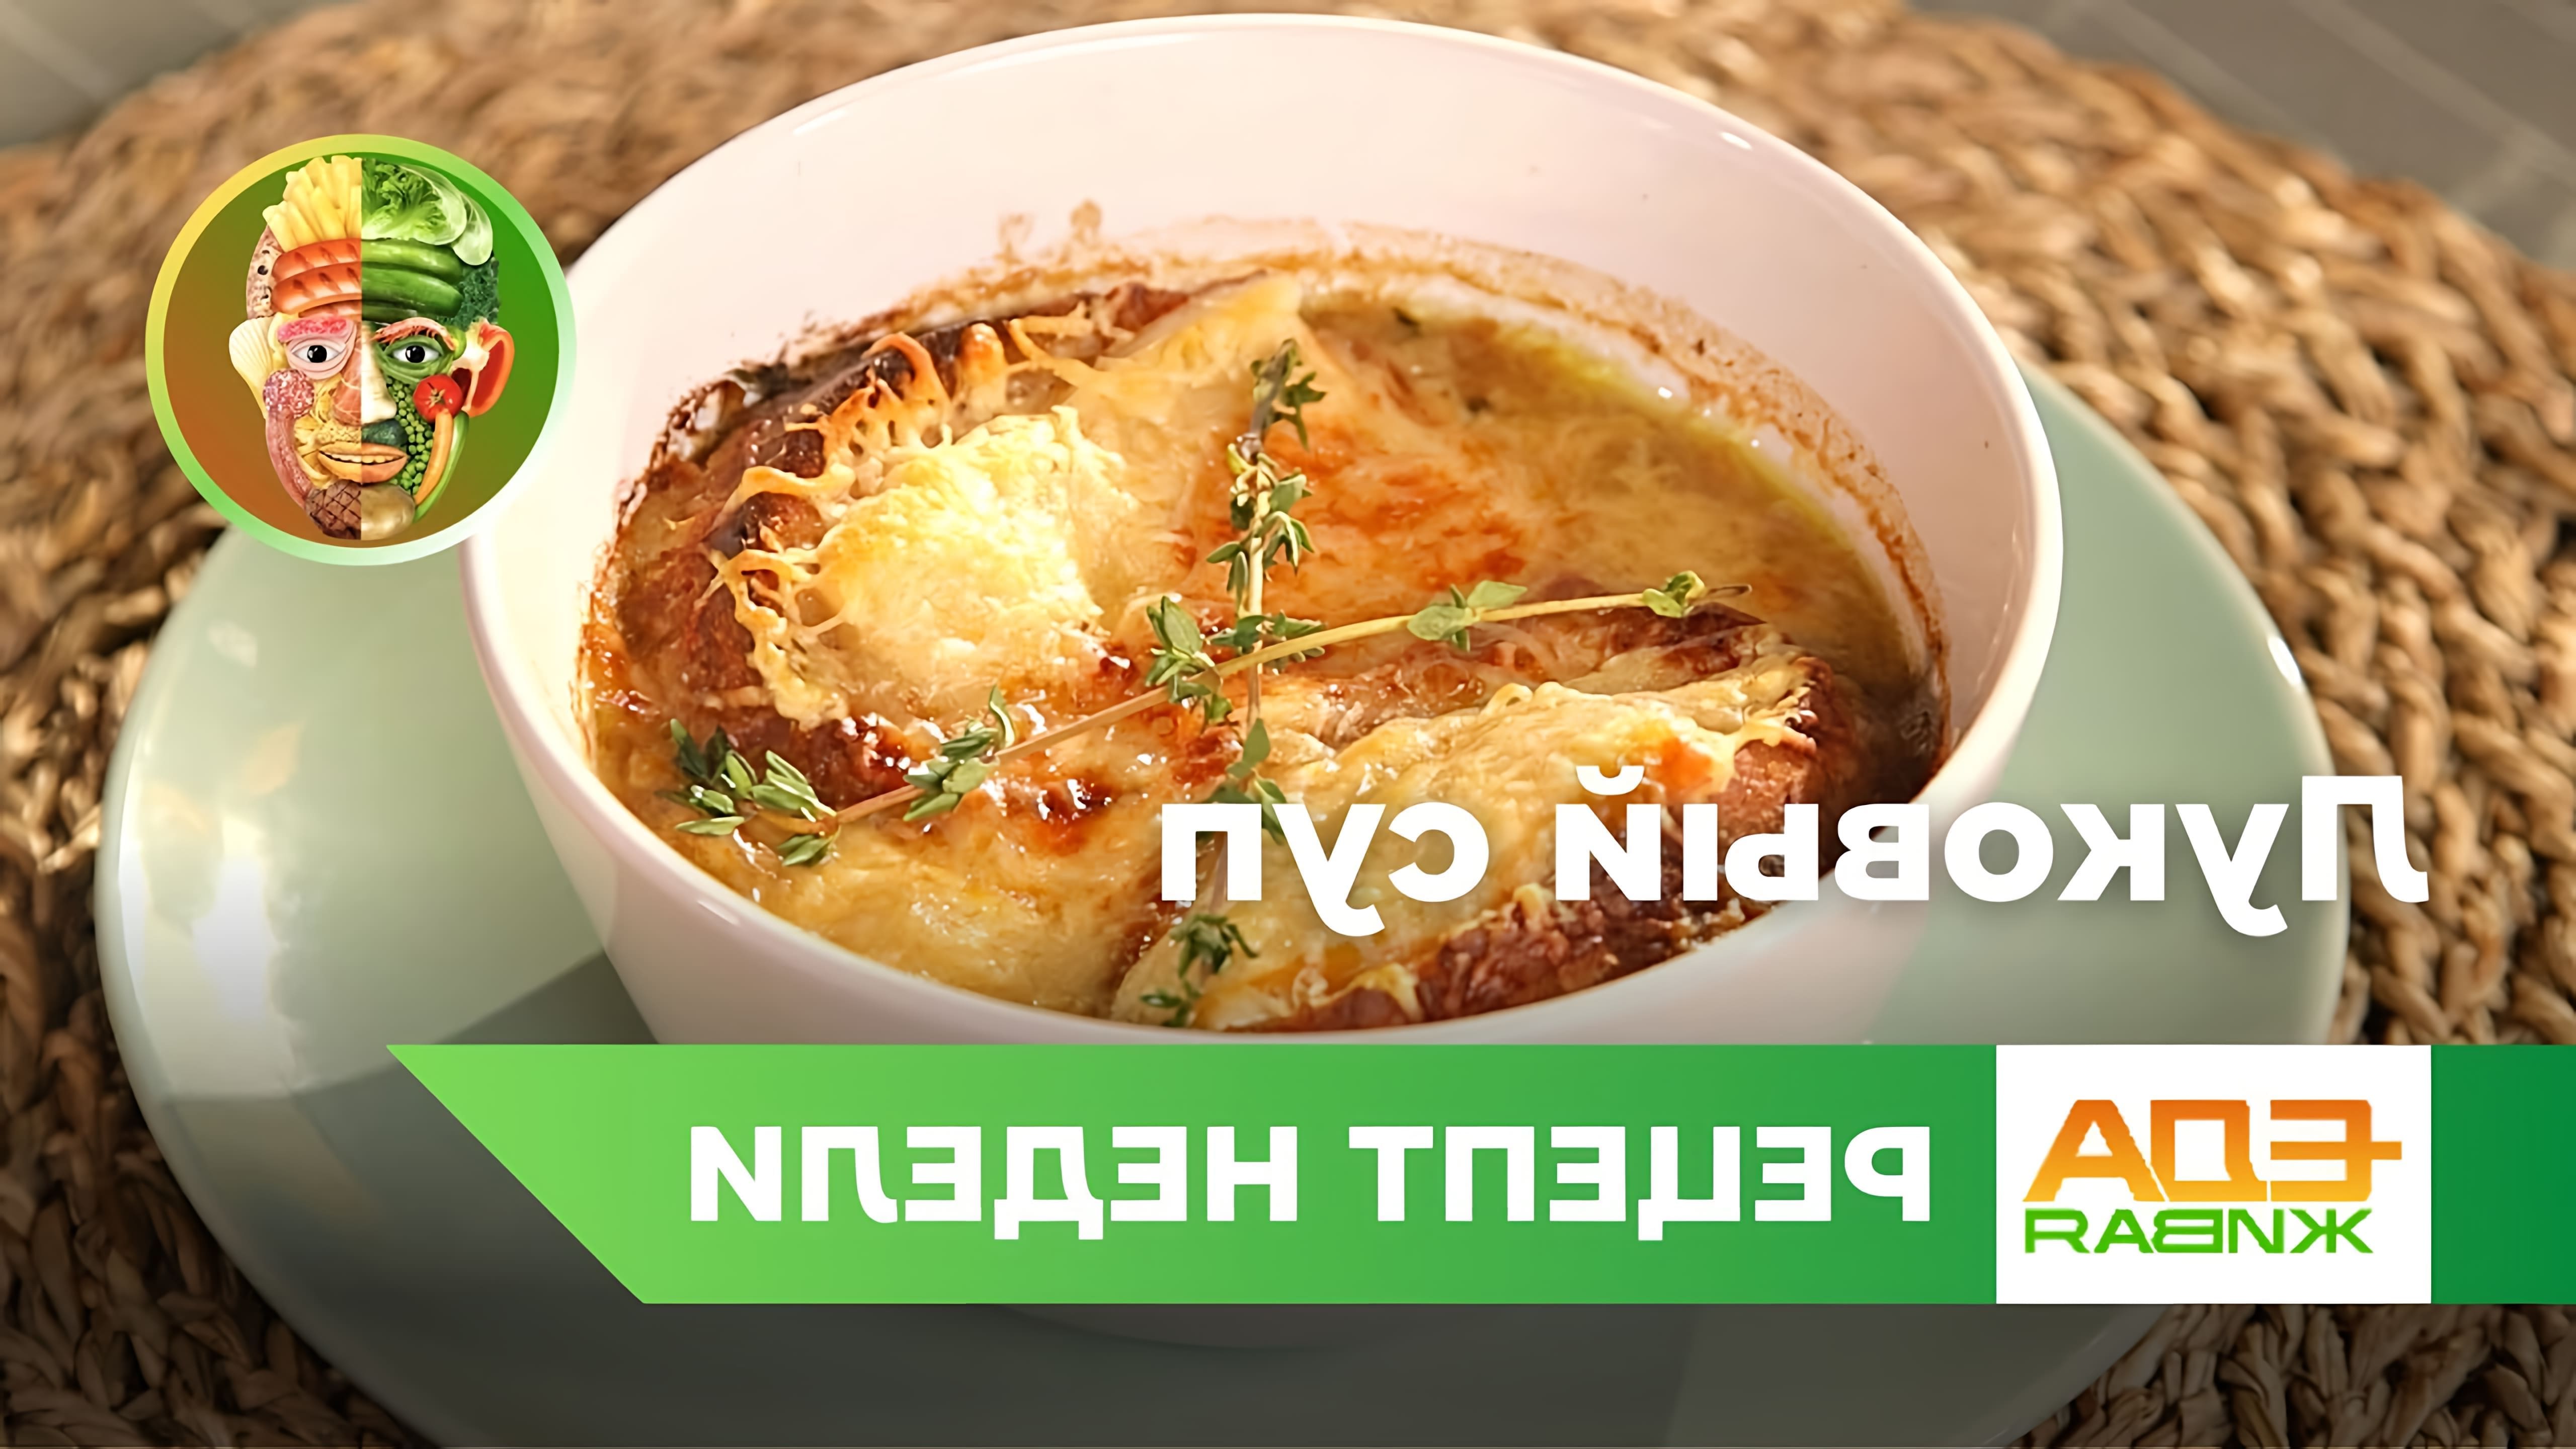 В этом видео демонстрируется рецепт французского лукового супа